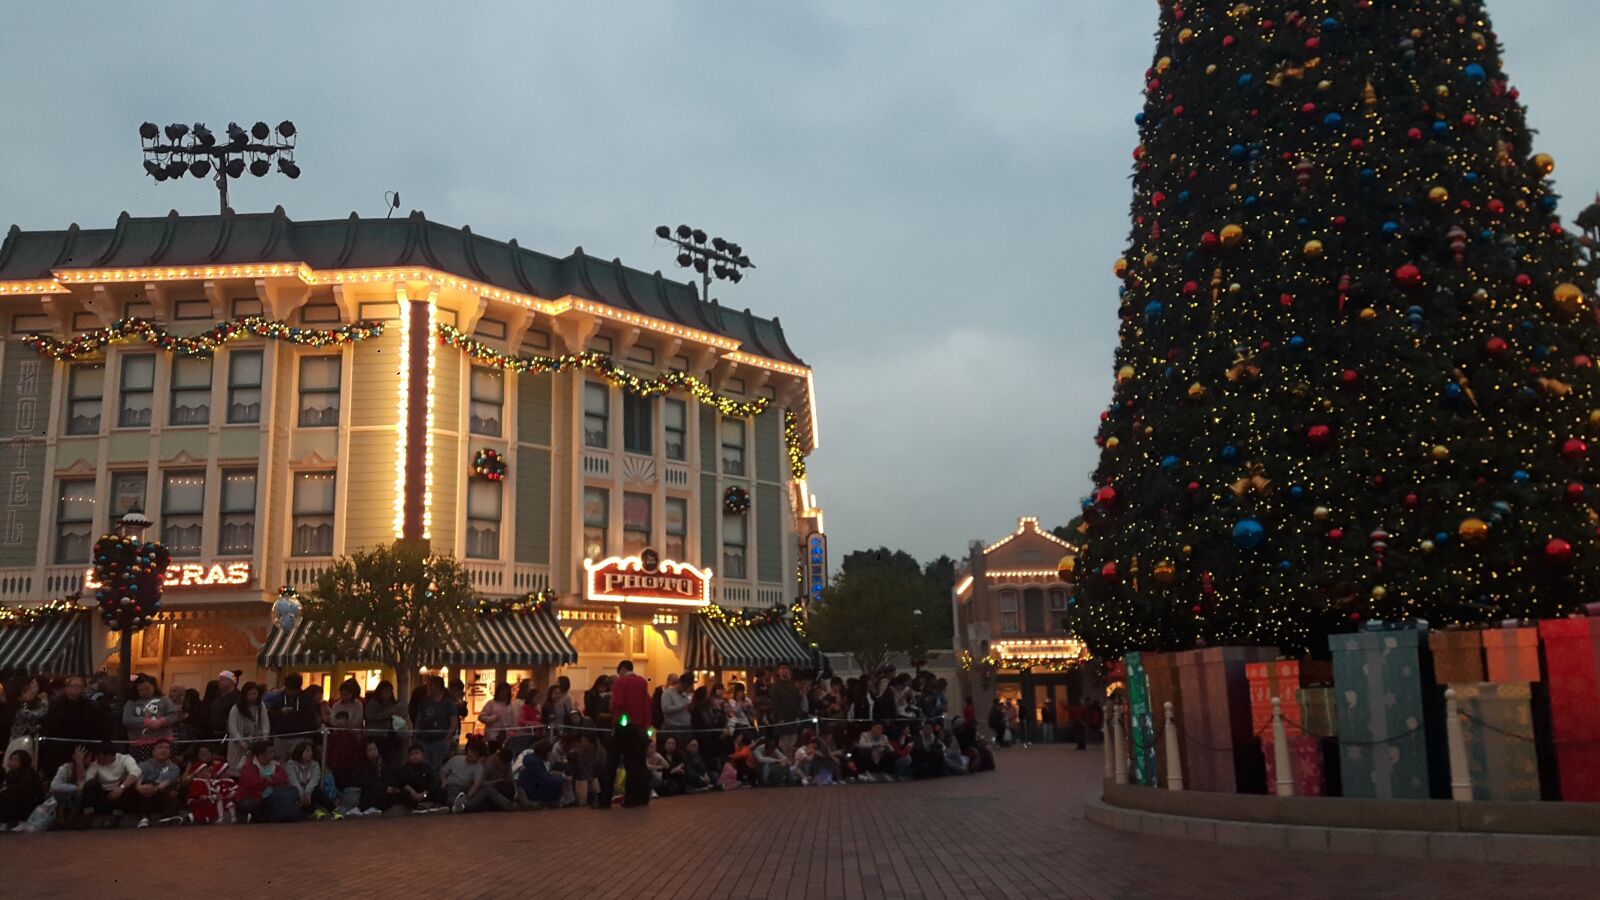 Samsung Galaxy A8 sample photo. Disneyland, hong kong, christmas photography